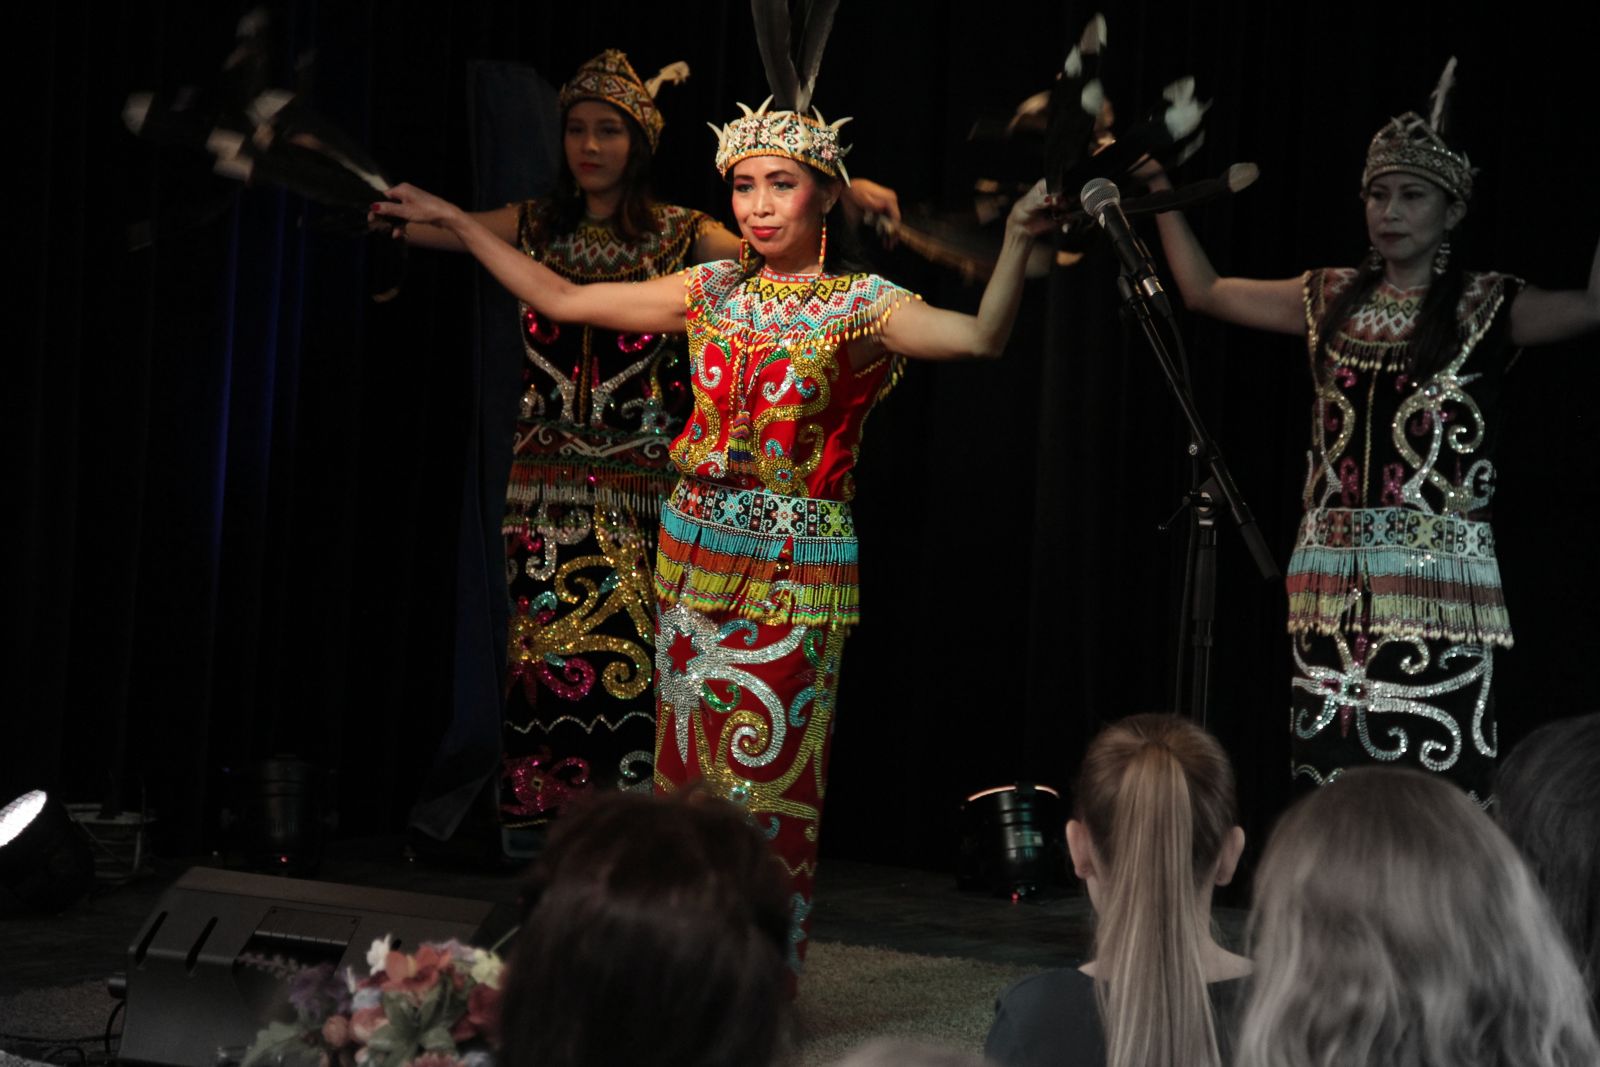 balinese dans indonesisch indonesië indië manifestatie internationale vrouwendag MuzeRijk Uden feest dans zing lach blij sterke vrouwen prachtige Mooie blije kleurrijke